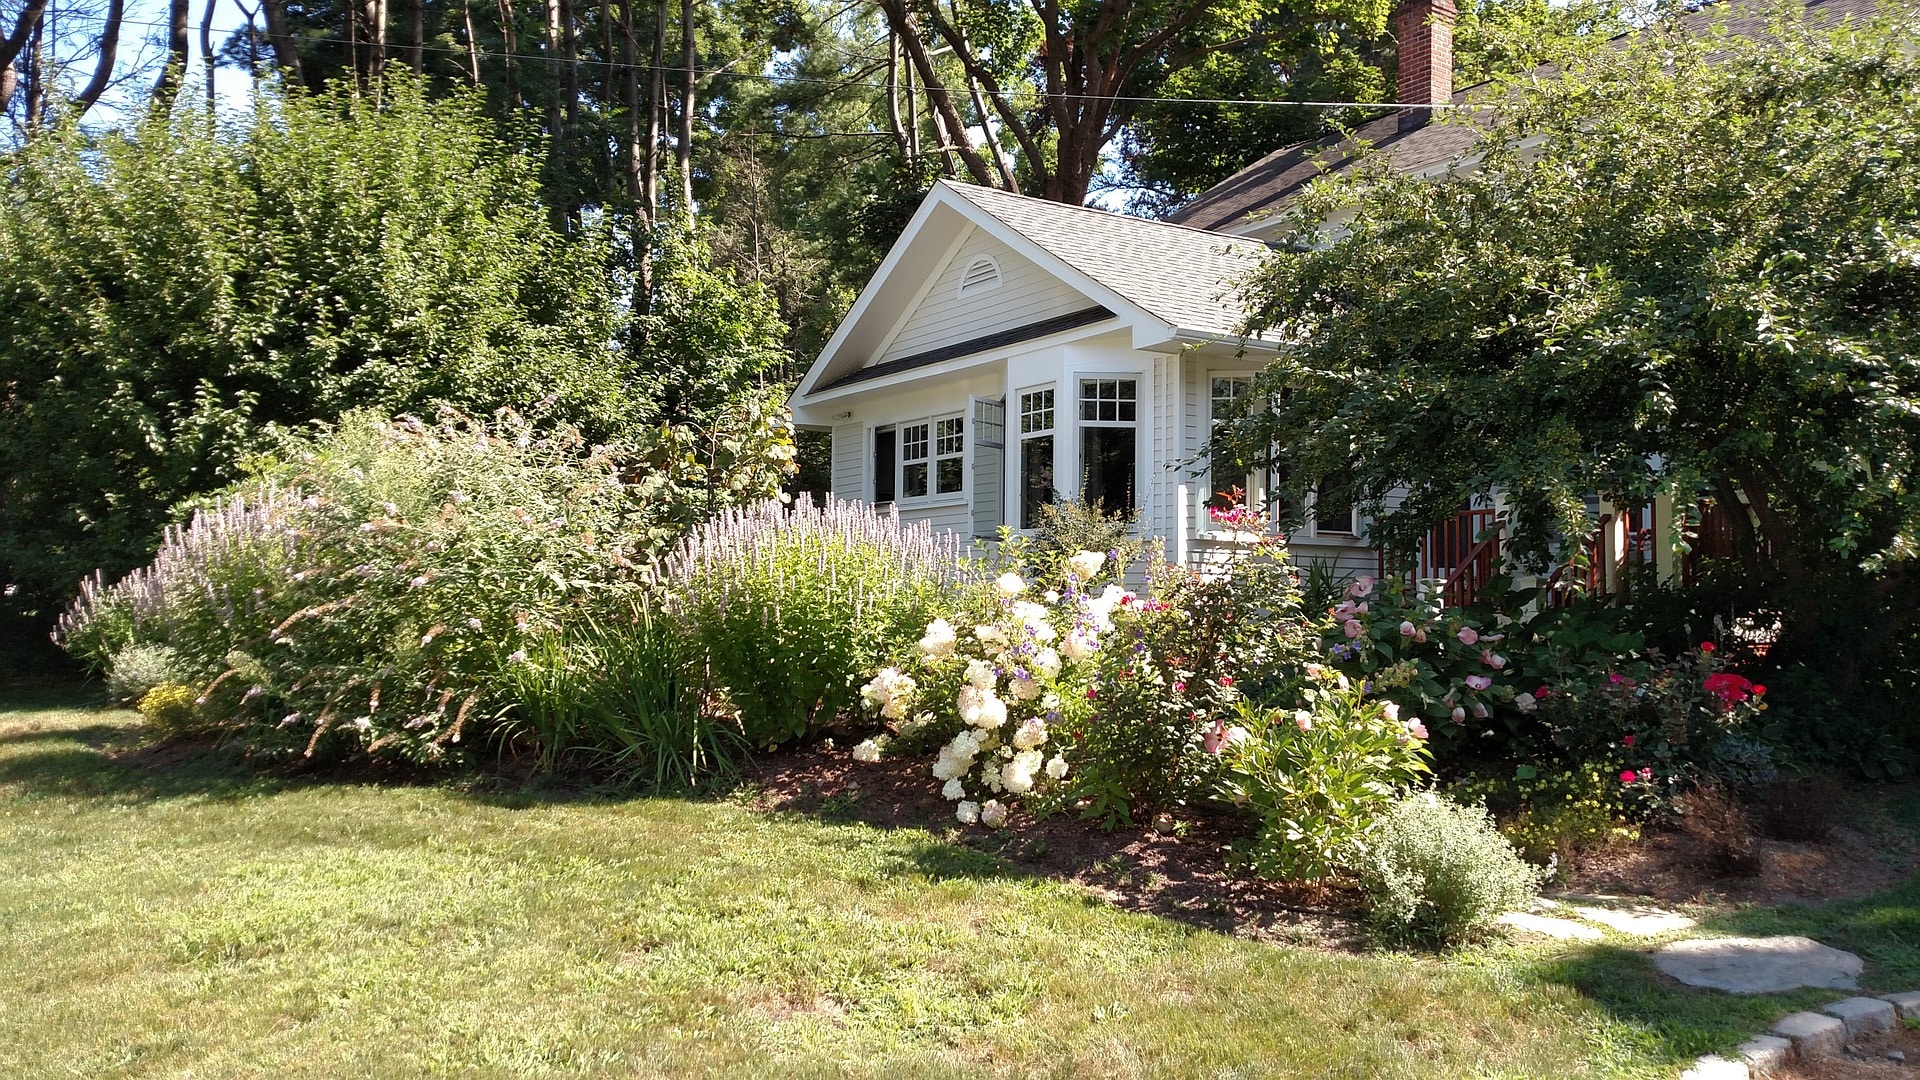 Maison avec jardin fleuri et arbustes sous un temps ensoleillé